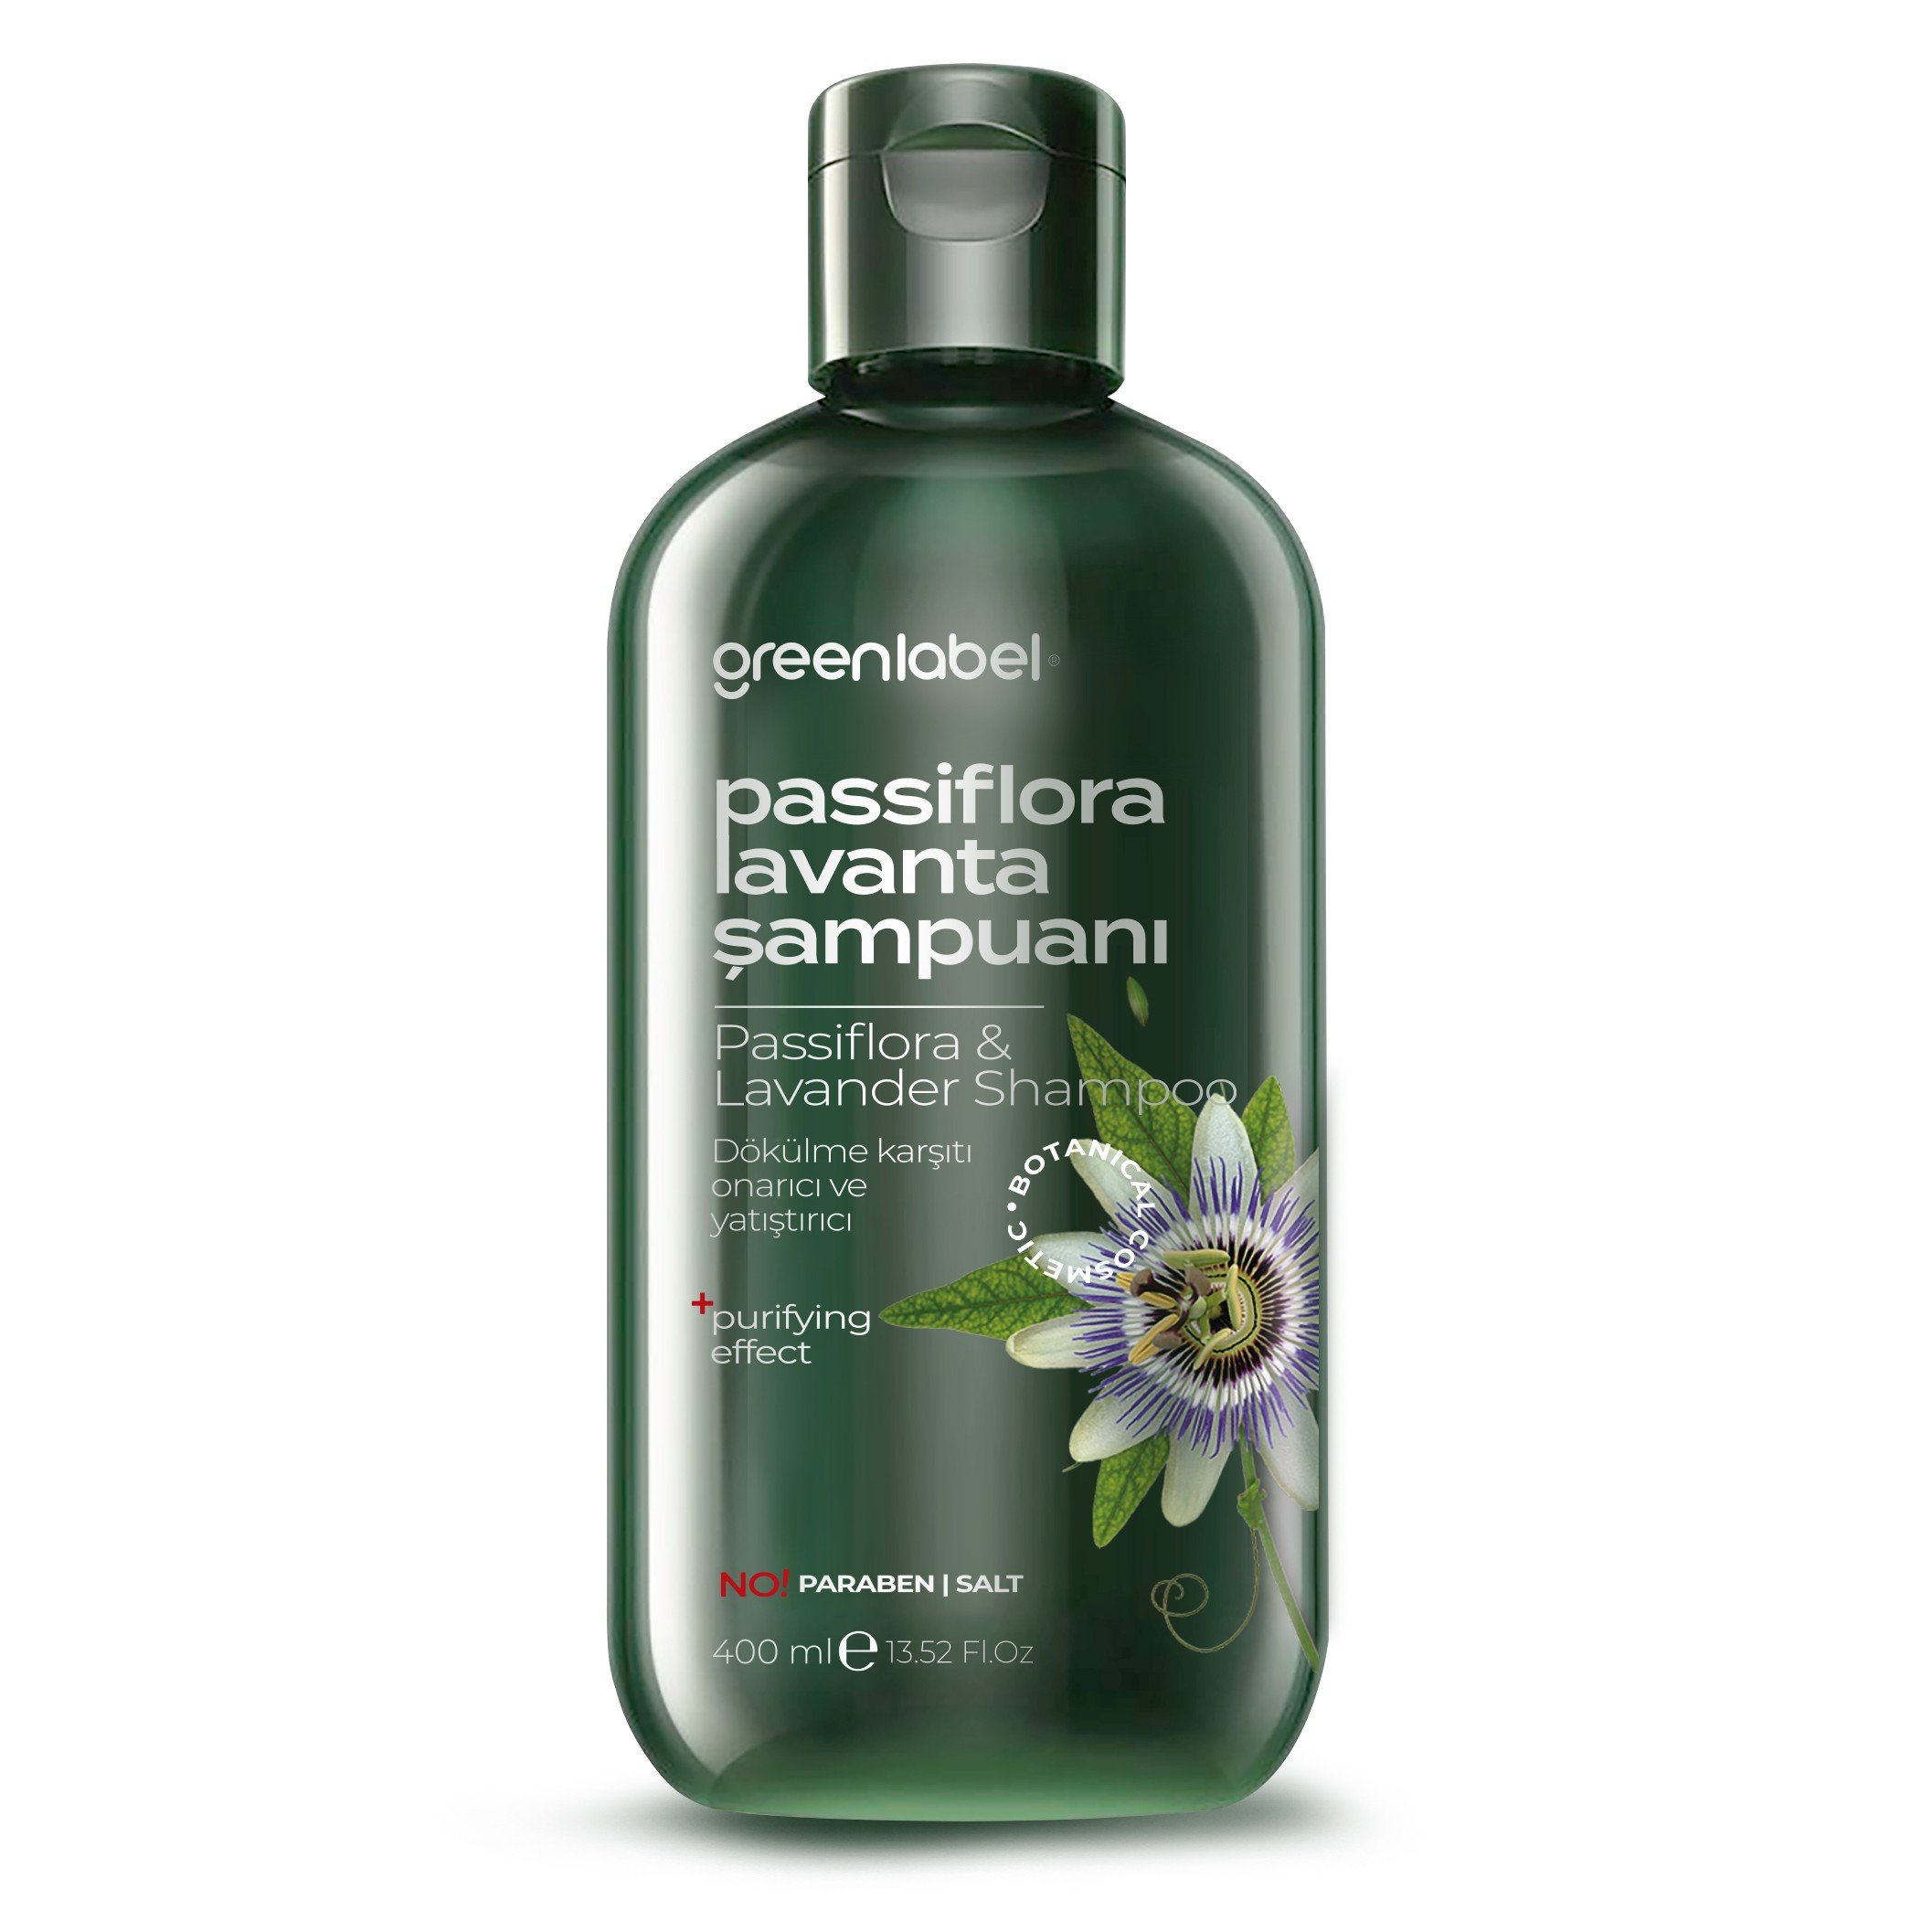 GREENLABEL Passiflora Ve Lavanta Özlü Parabensiz Tuzsuz Kepek Karşıtı Bakım Ve Onarım Şampuanı 400 ml